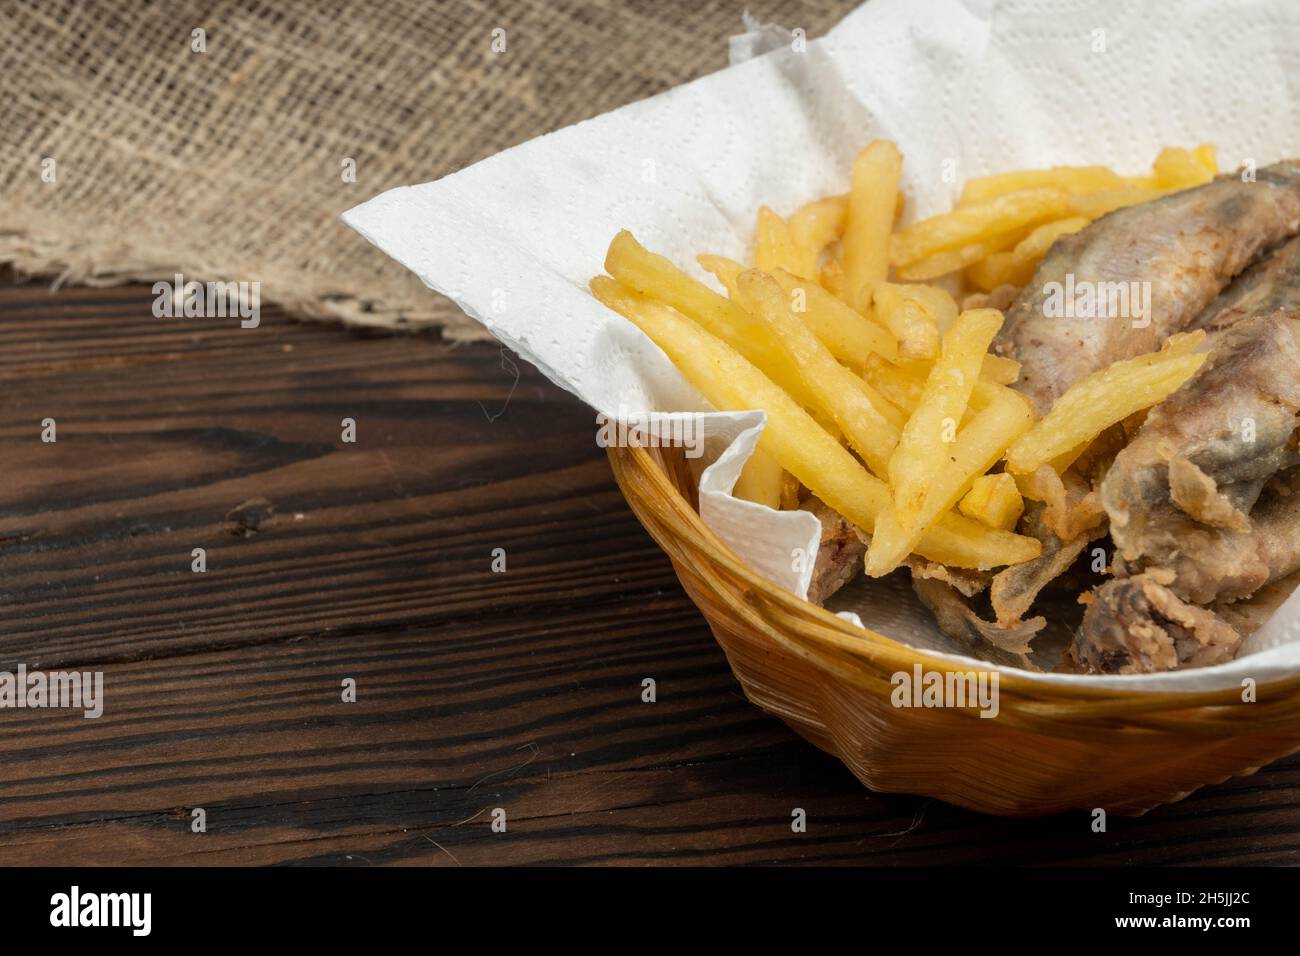 Poisson frit et frites sur une serviette en papier dans un panier en osier sur une table en bois Banque D'Images